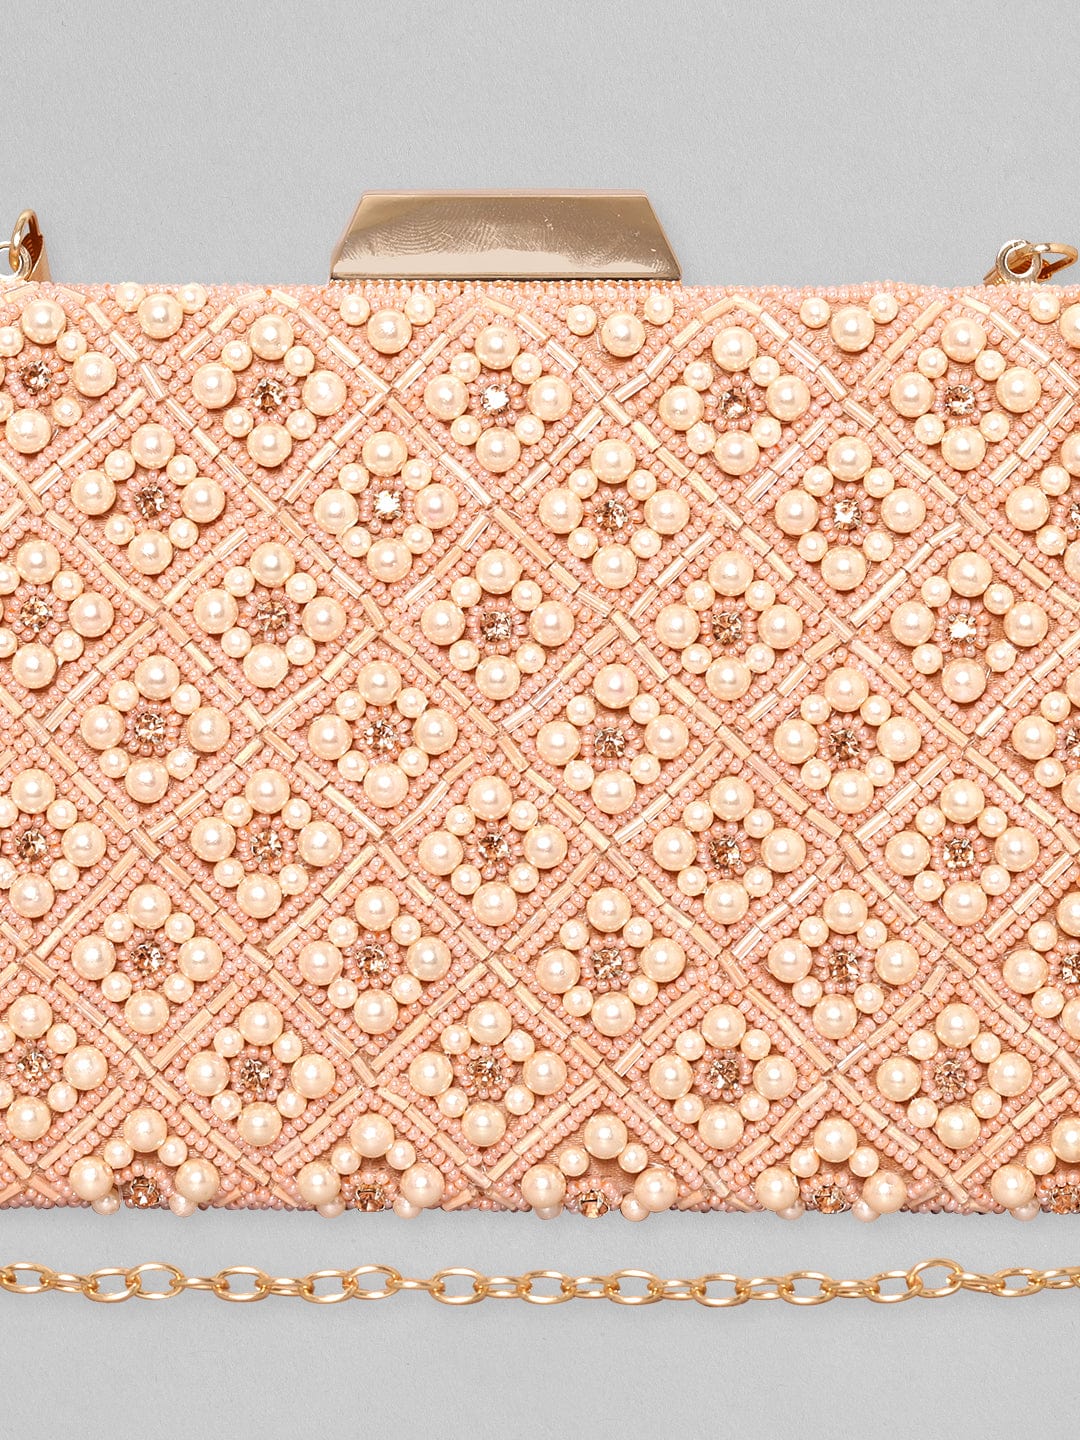 Rubans Pink Embellished Shopper Handheld Bag Clutches